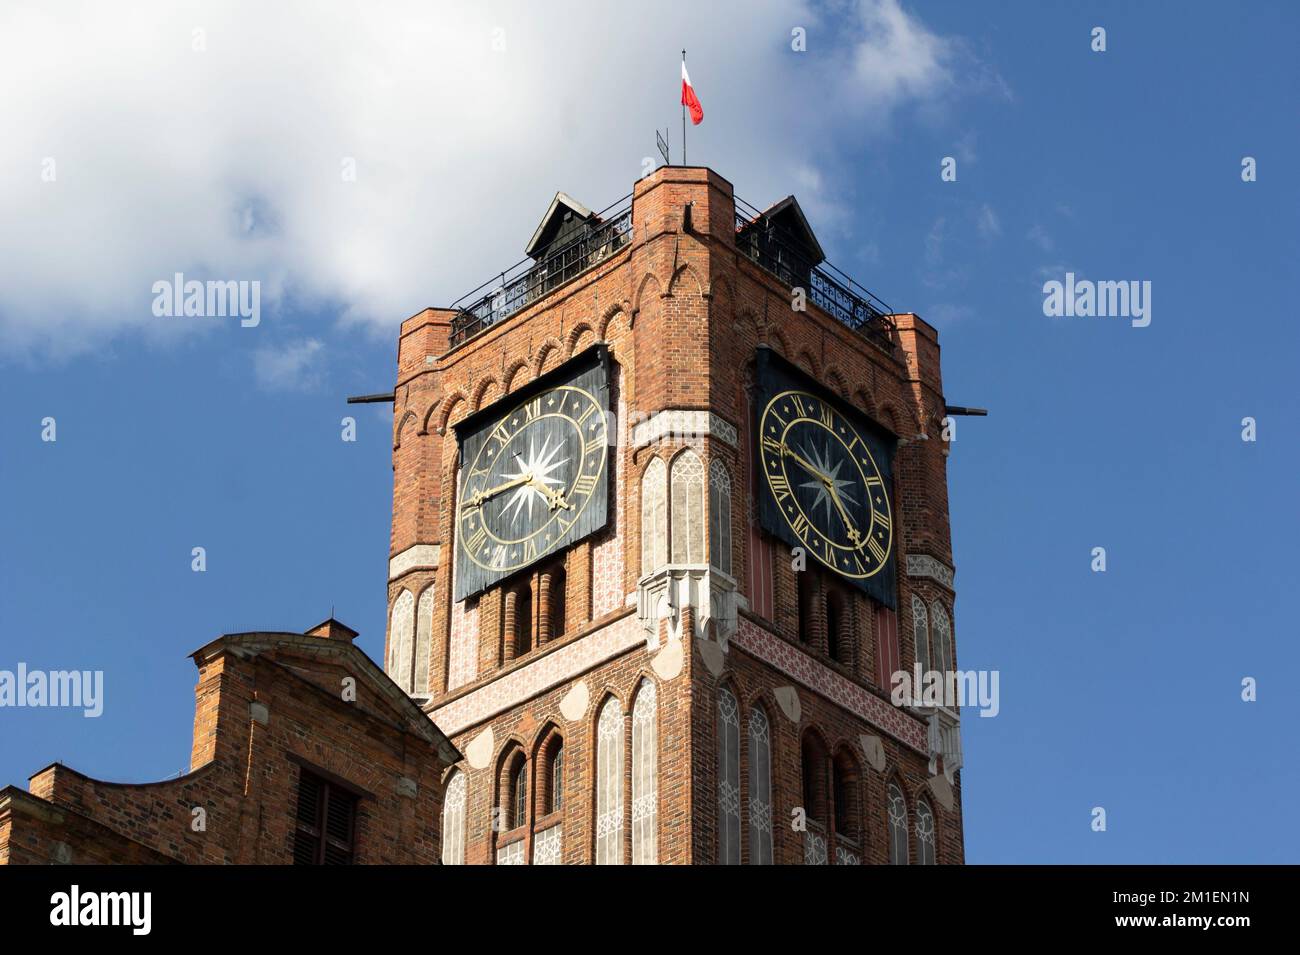 Uhrenturm des Rathauses von Ratusz Staromiejski in Torun, Polen, mit polnischer Flagge Stockfoto